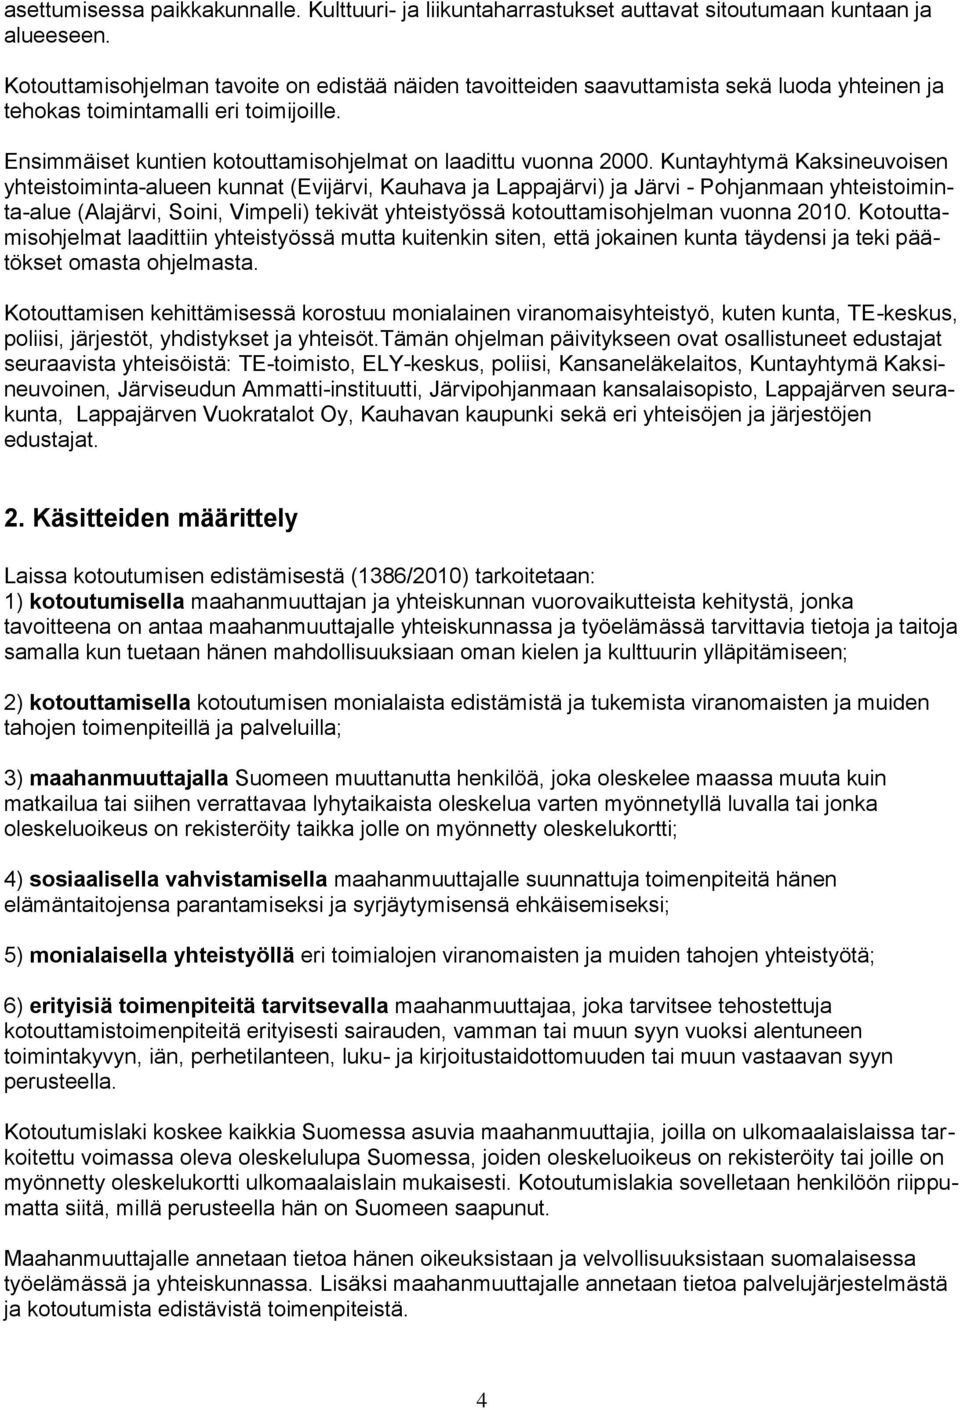 Kuntayhtymä Kaksineuvoisen yhteistoiminta-alueen kunnat (Evijärvi, Kauhava ja Lappajärvi) ja Järvi - Pohjanmaan yhteistoiminta-alue (Alajärvi, Soini, Vimpeli) tekivät yhteistyössä kotouttamisohjelman